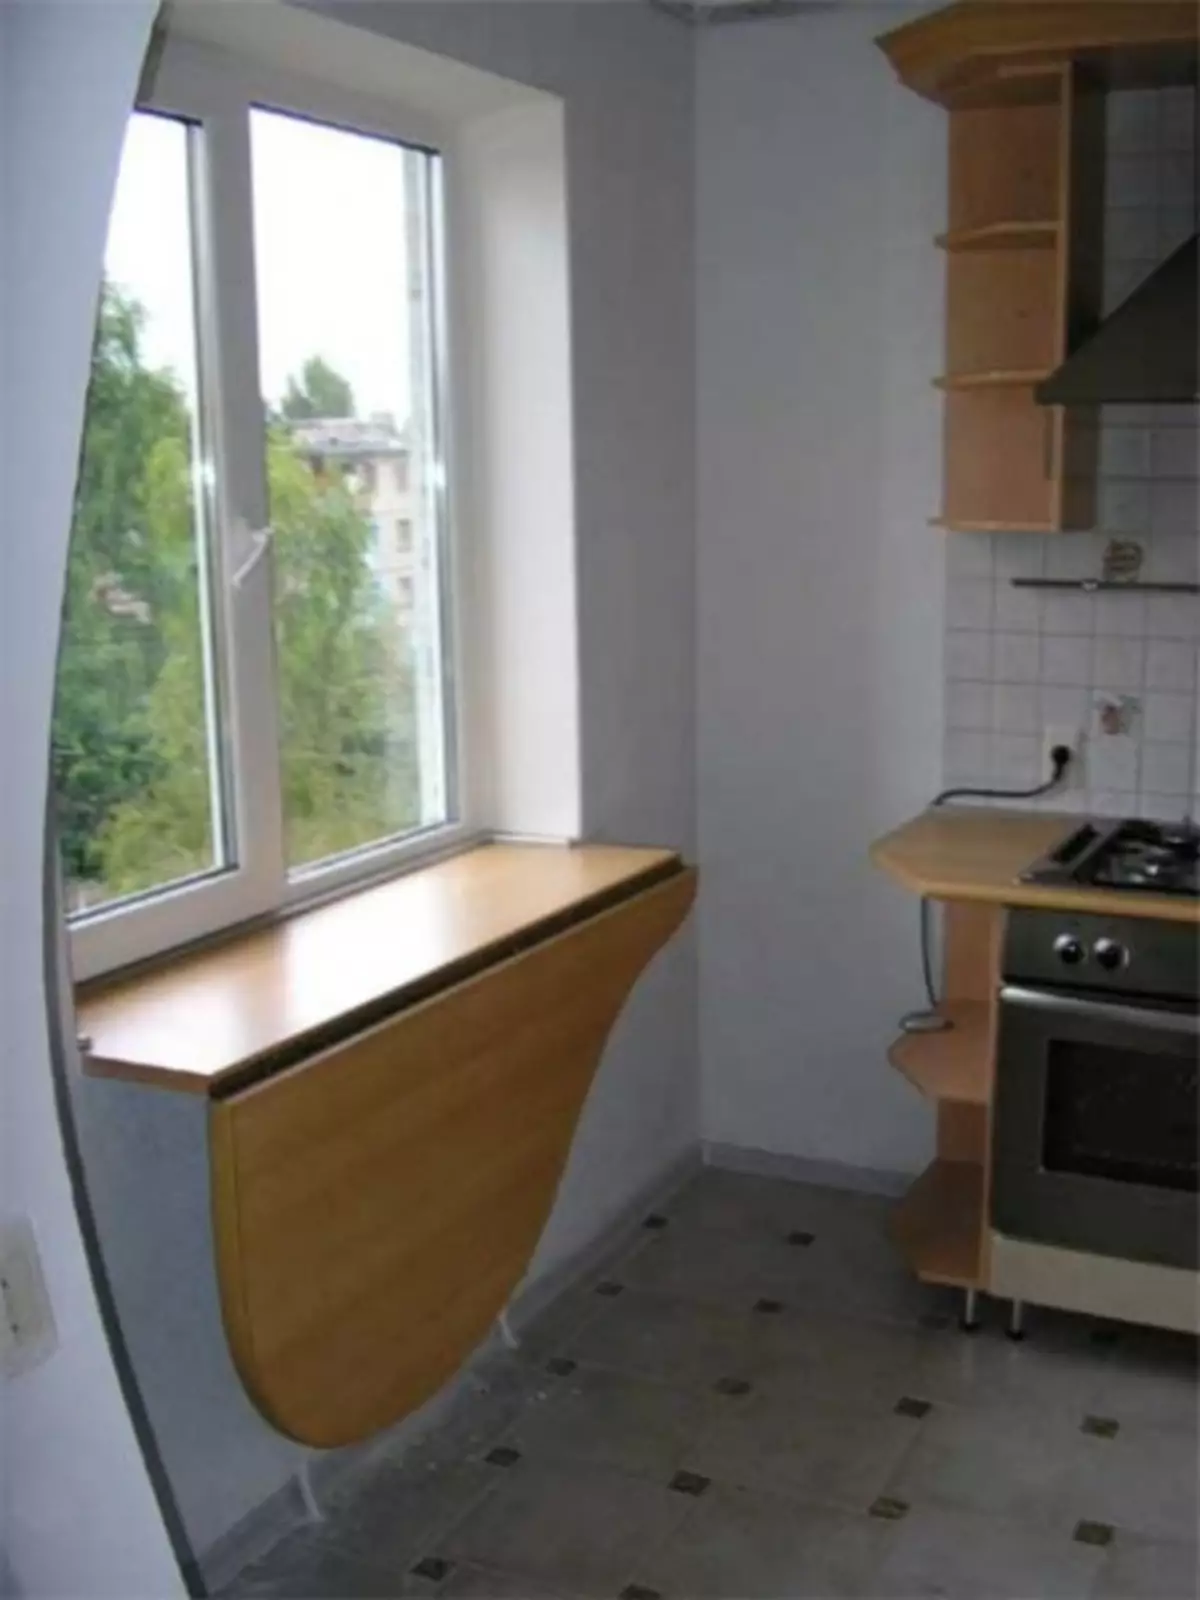 Cara menggunakan ambang jendela di dapur (65 foto)